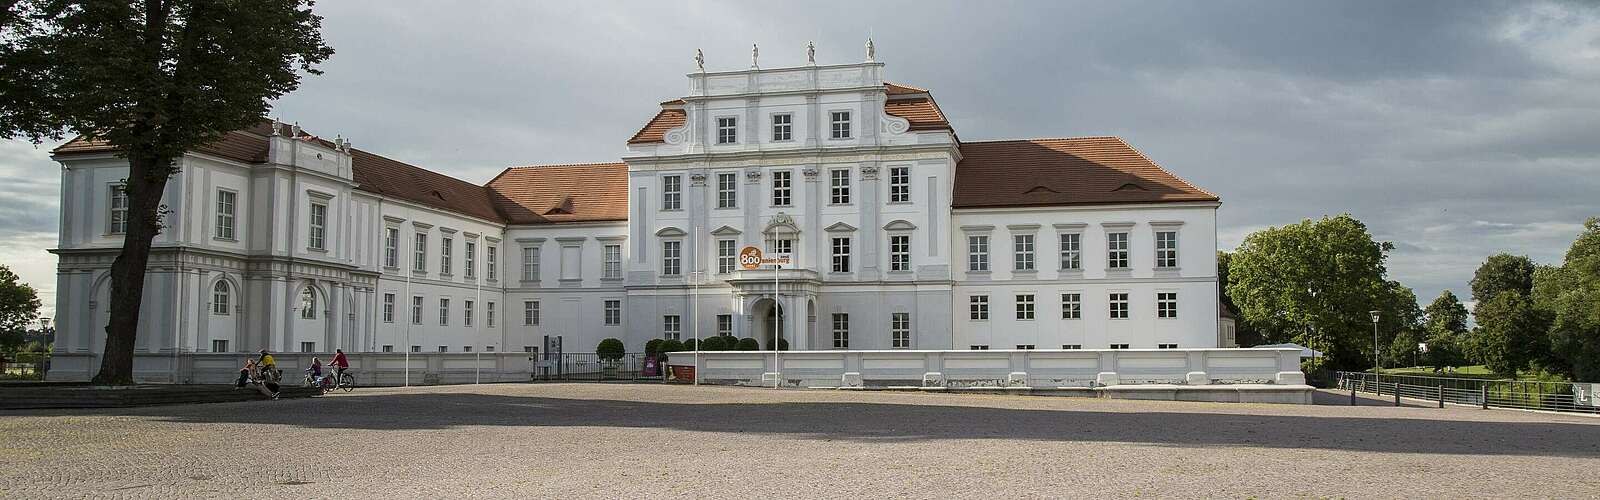 Schloss Oranienburg,
        
    

        Foto: TMB-Fotoarchiv/Steffen Lehmann